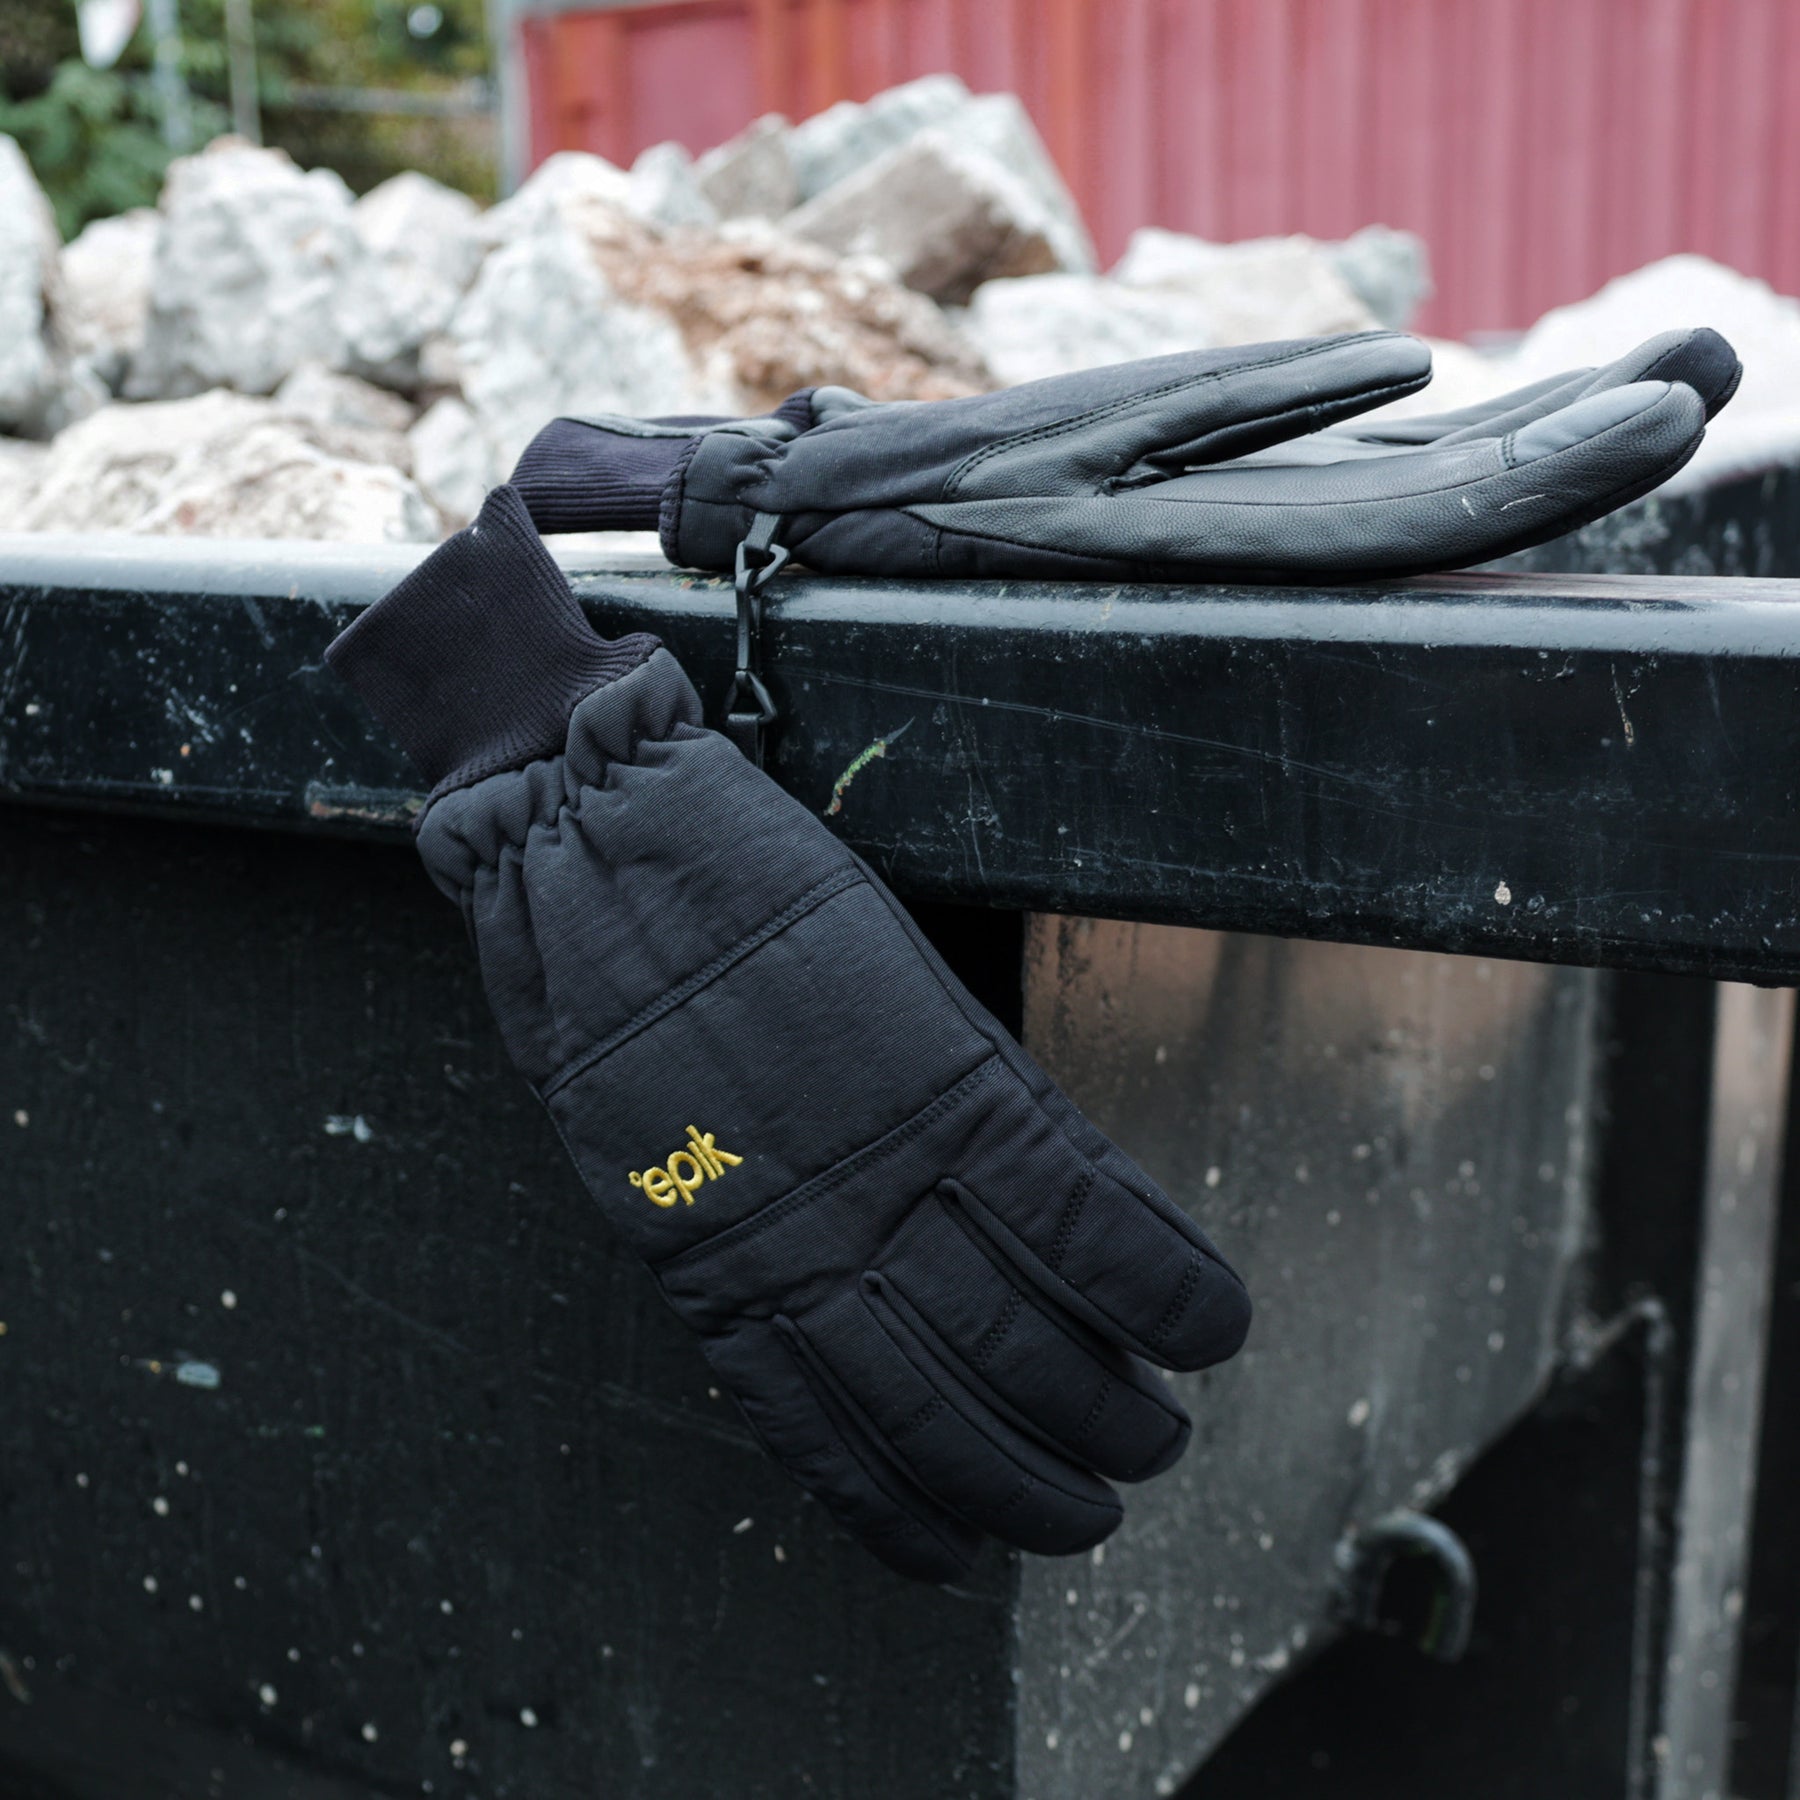 Epik Arctic Glove - Freezer Work Glove with Reinforced Grip in Black SM